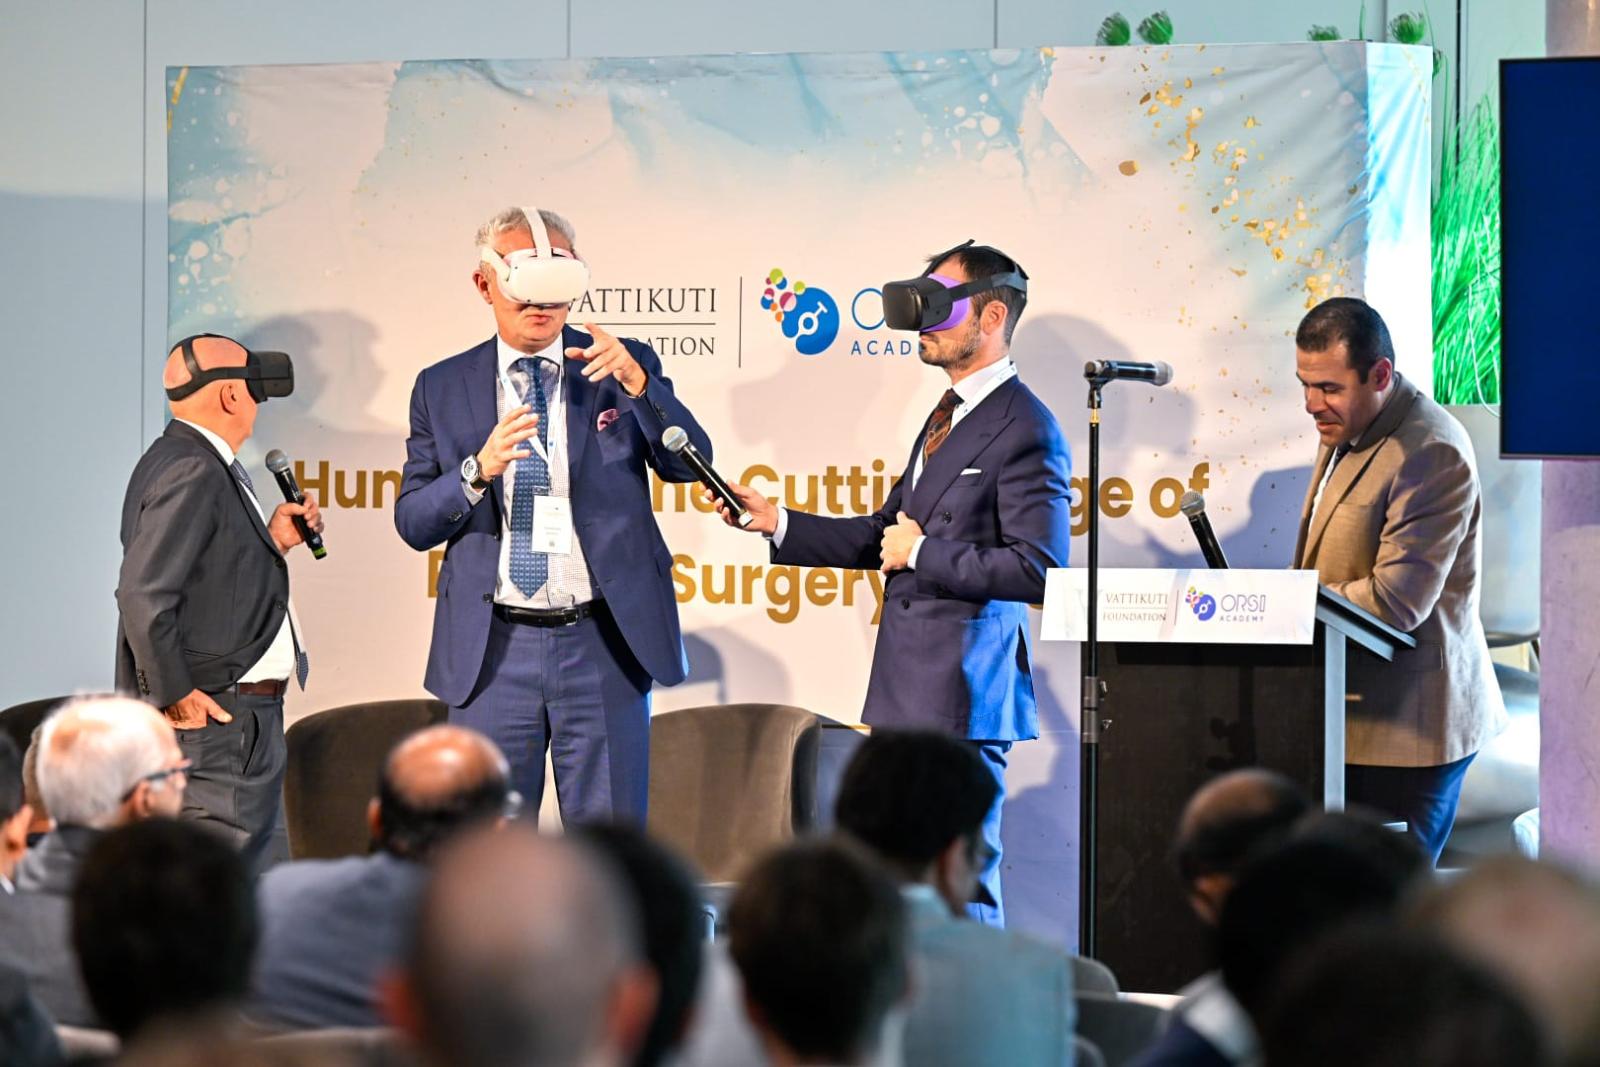 Vattikuti Foundation Symposium VR brillen